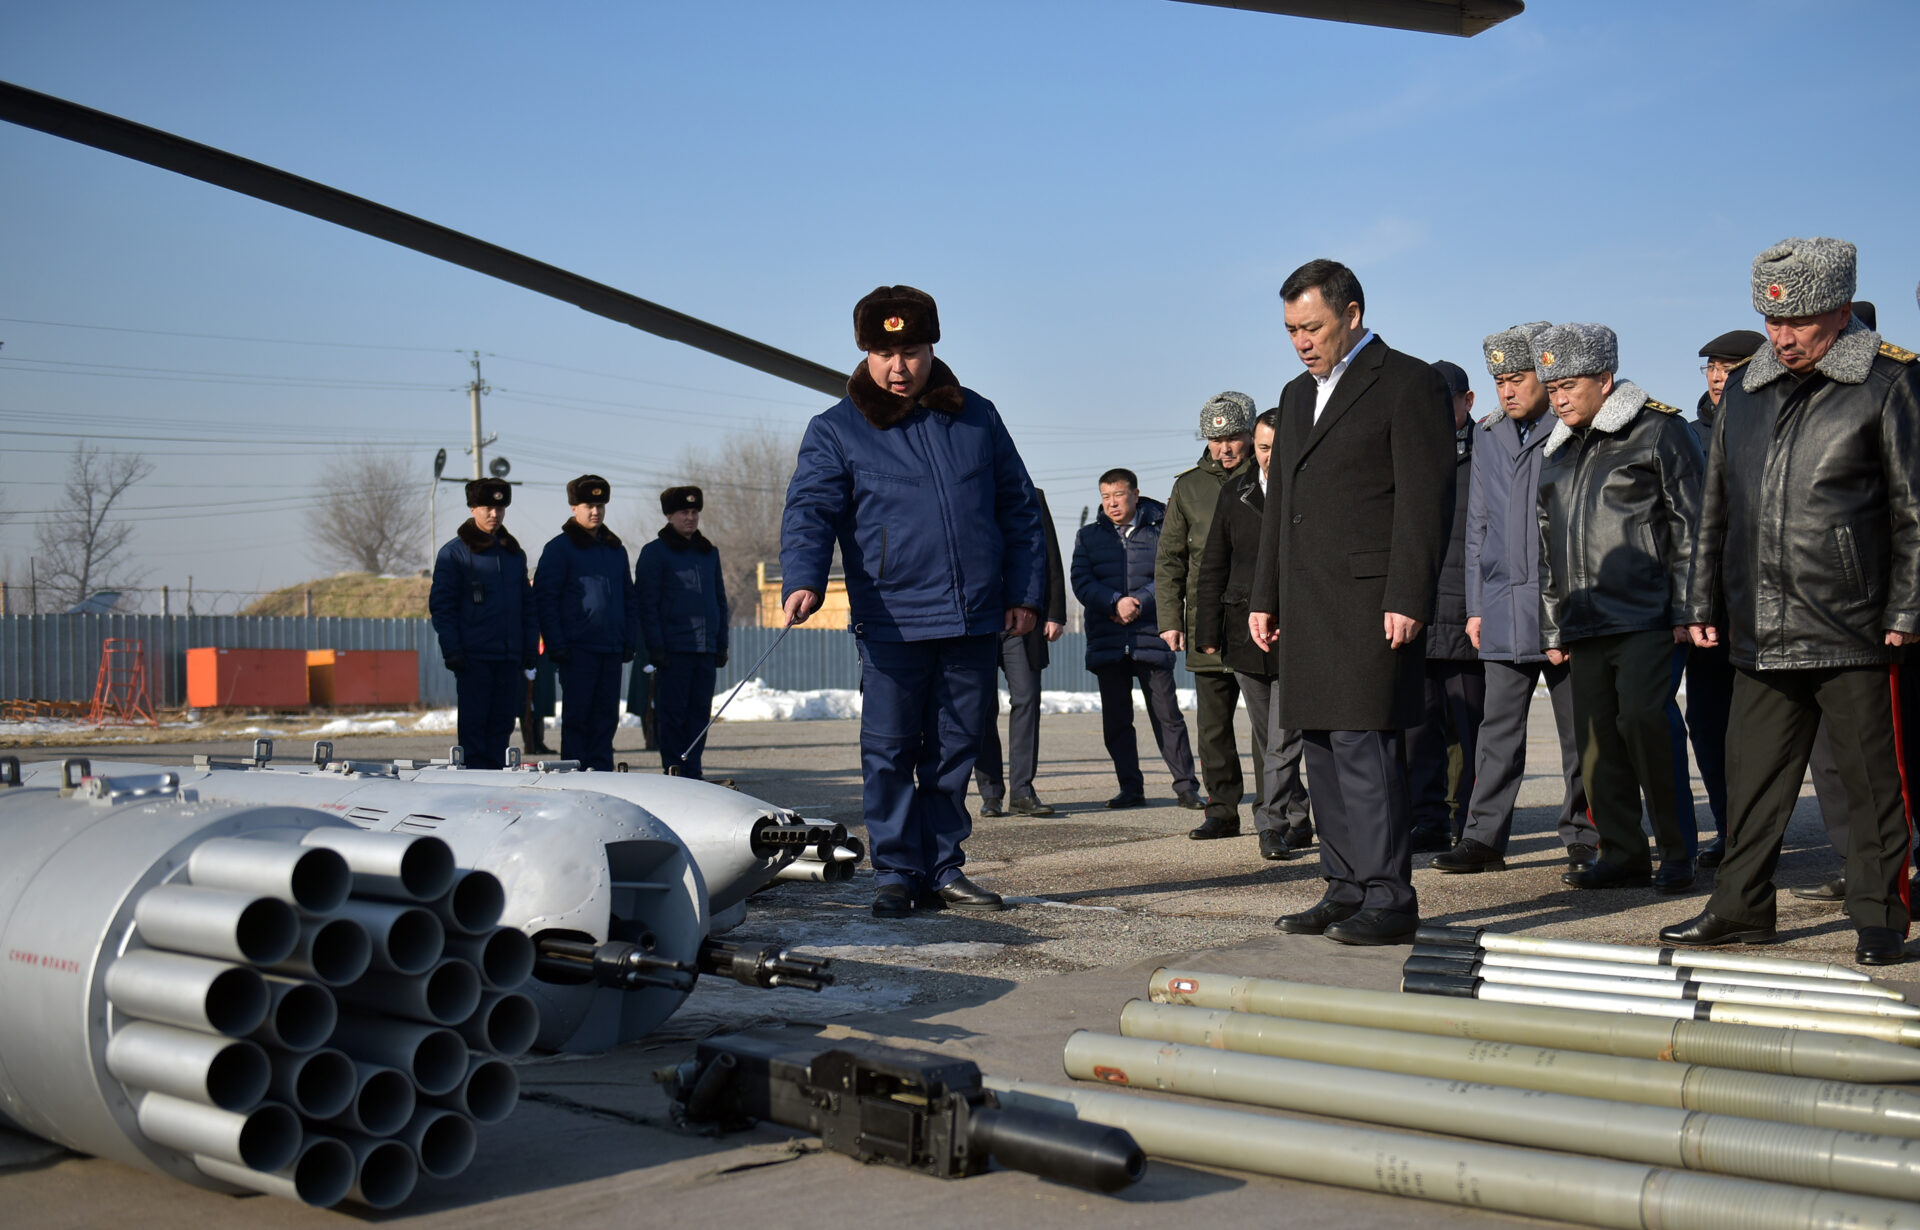 13 У Кыргызстана теперь есть зенитно-ракетный комплекс «Печора-2 БМ" - фото